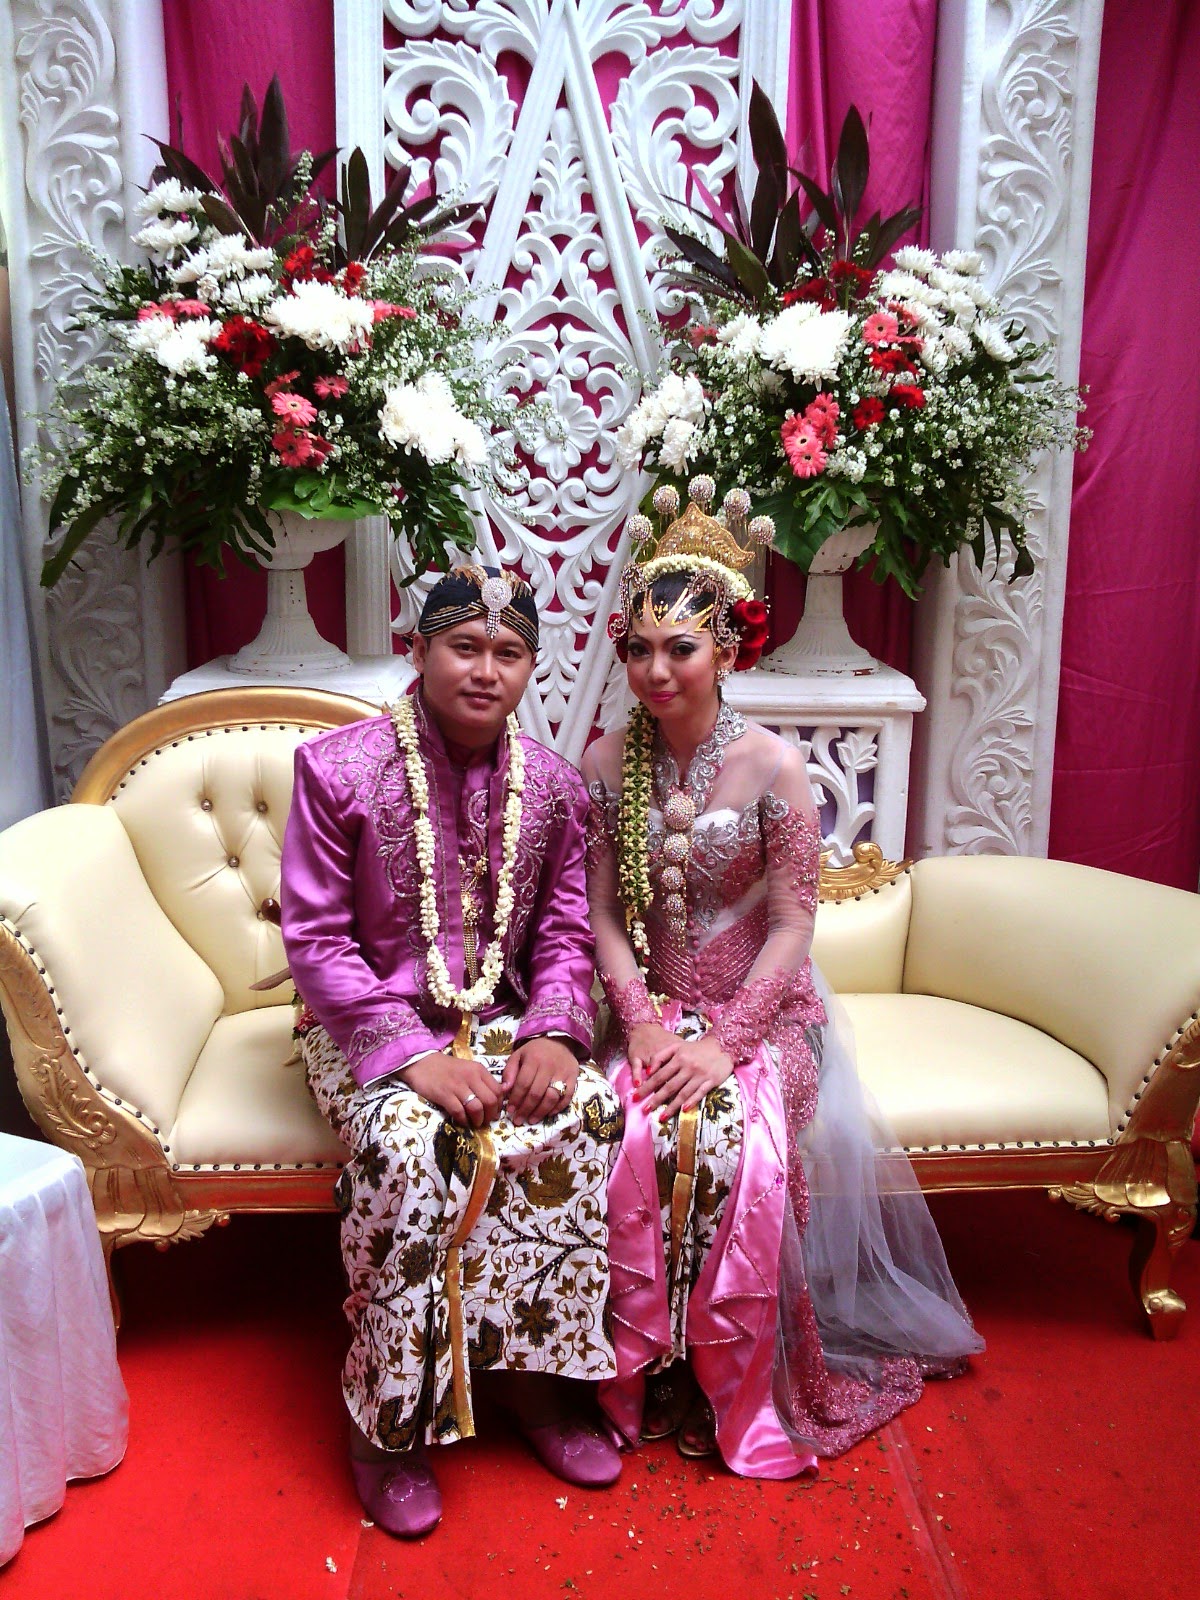  Pernikahan  di  Rumah Type A Catering Murah  Jakarta Harga  